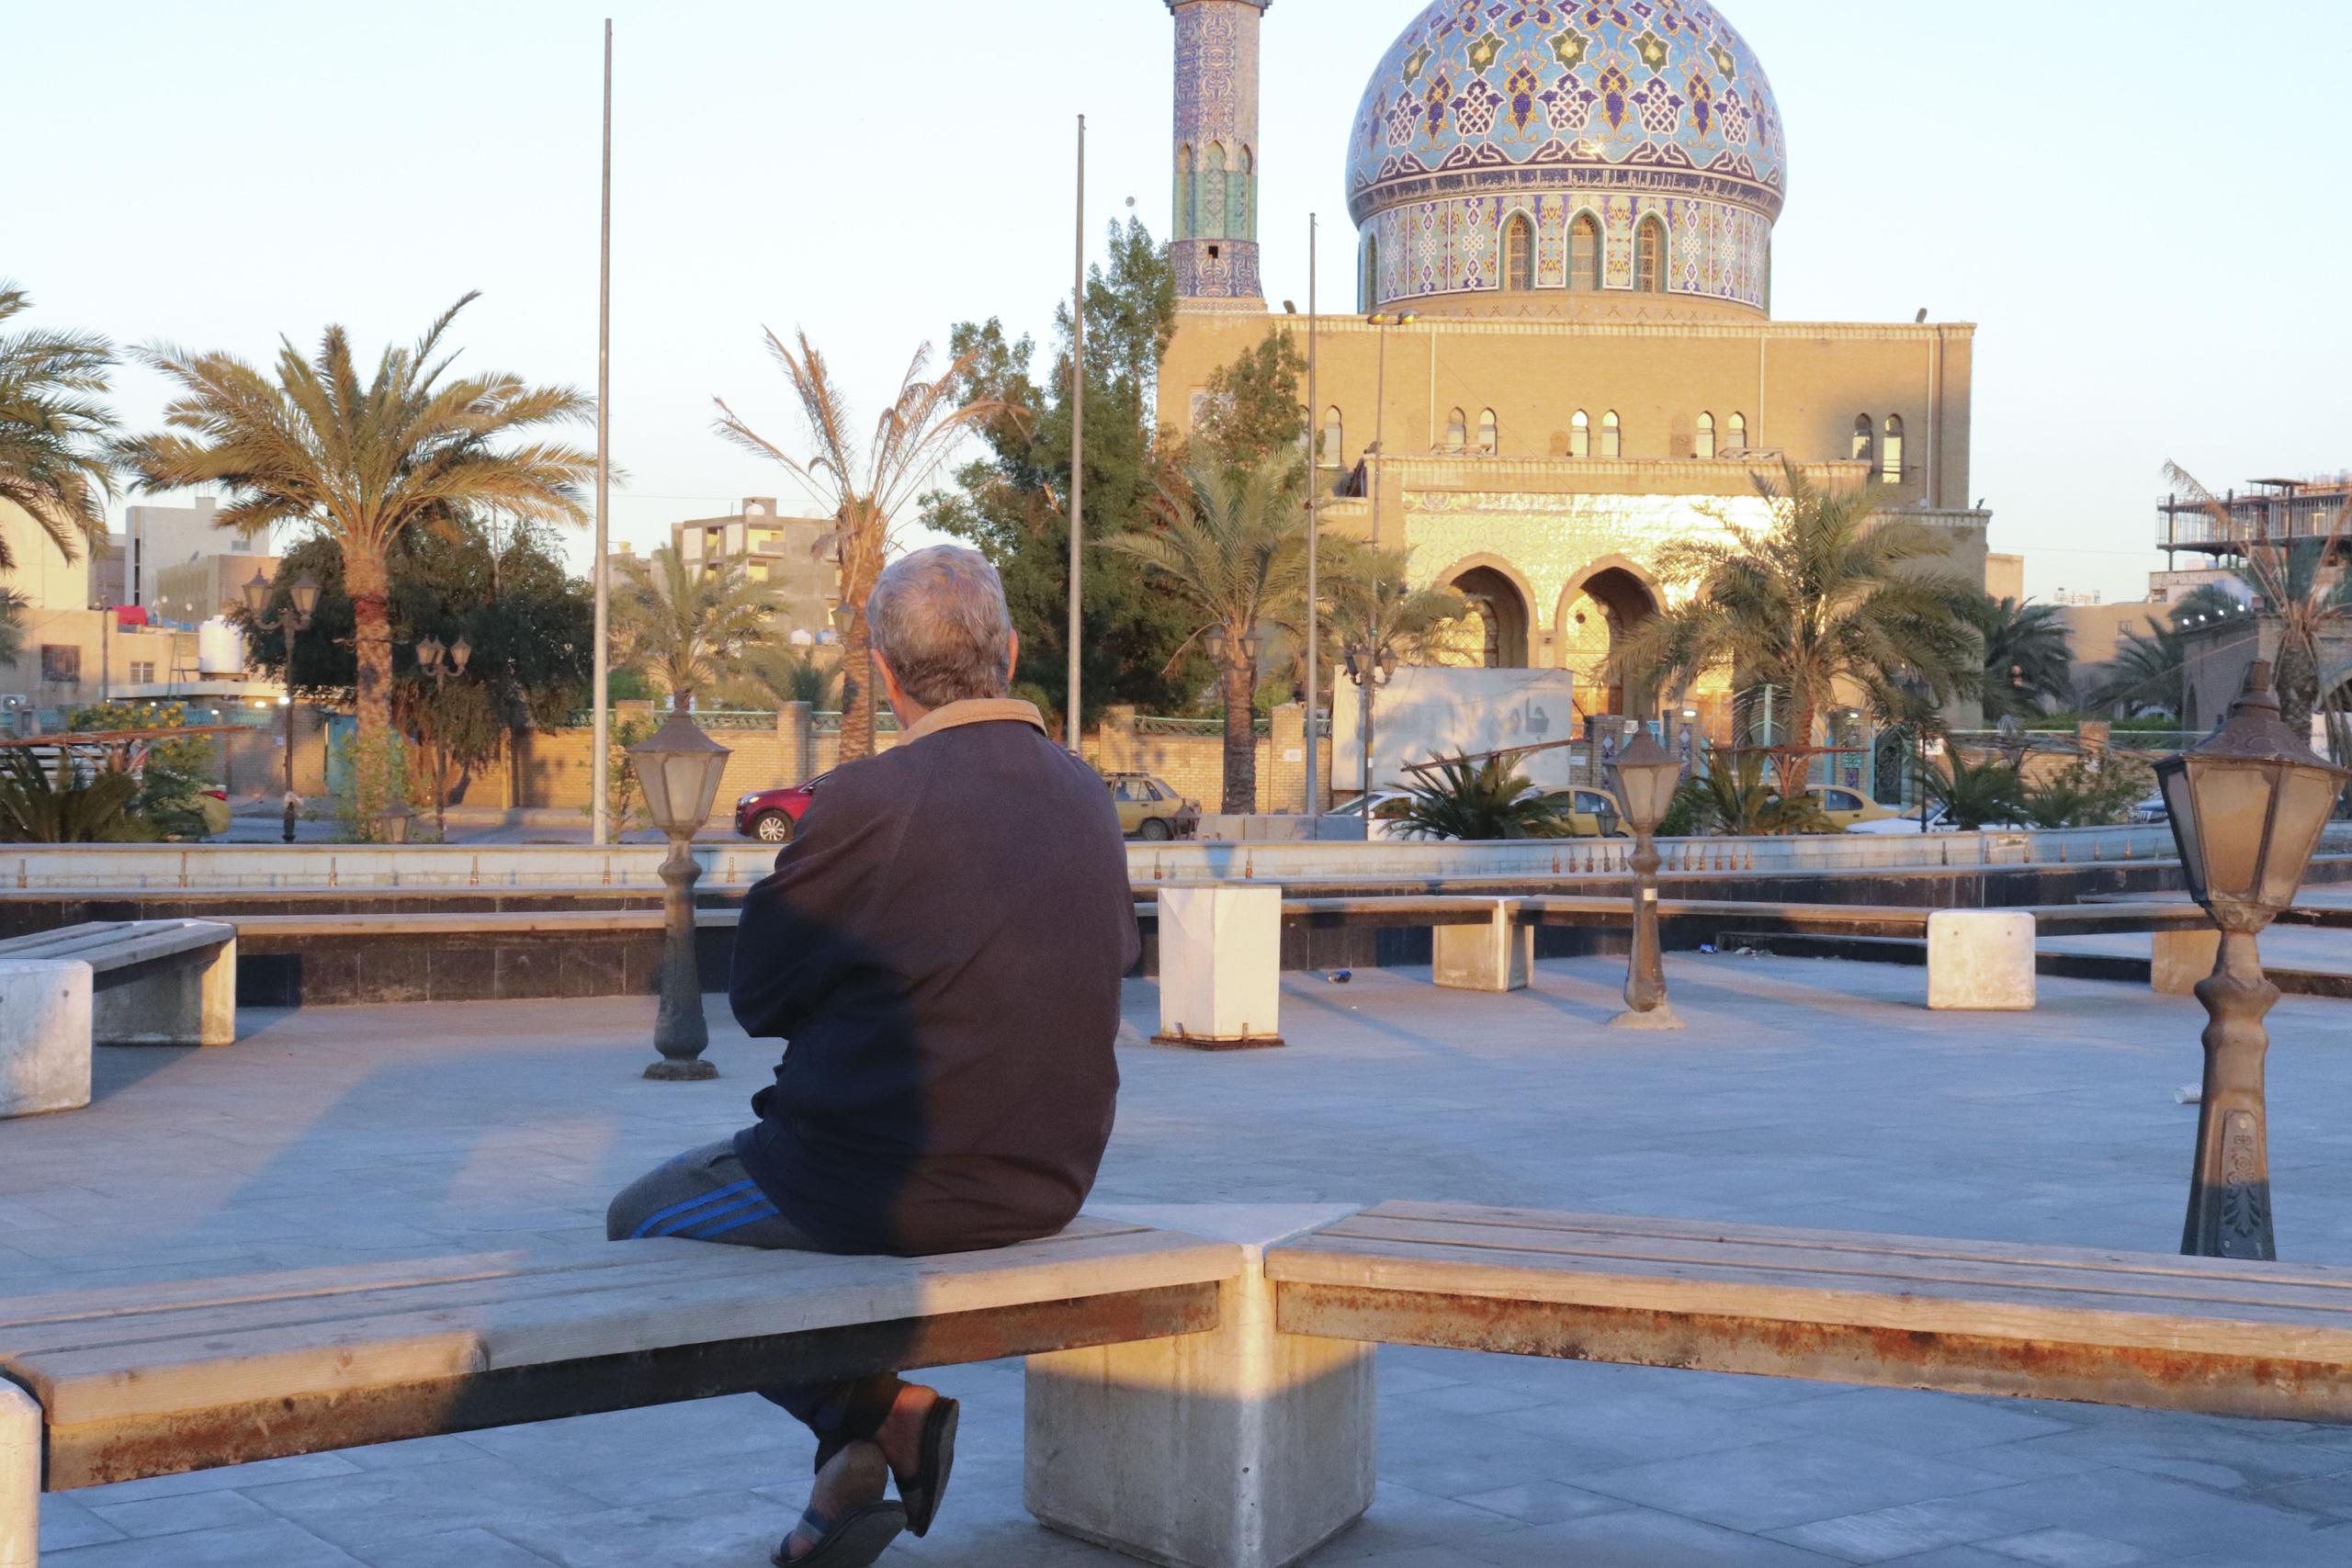 Un iraquí sentado en un banco en la plaza Firdos de Bagdad, donde el 9 de abril de 2003 la famosa estatua de Sadam Husein fue derribada. EFE/Carles Grau Sivera